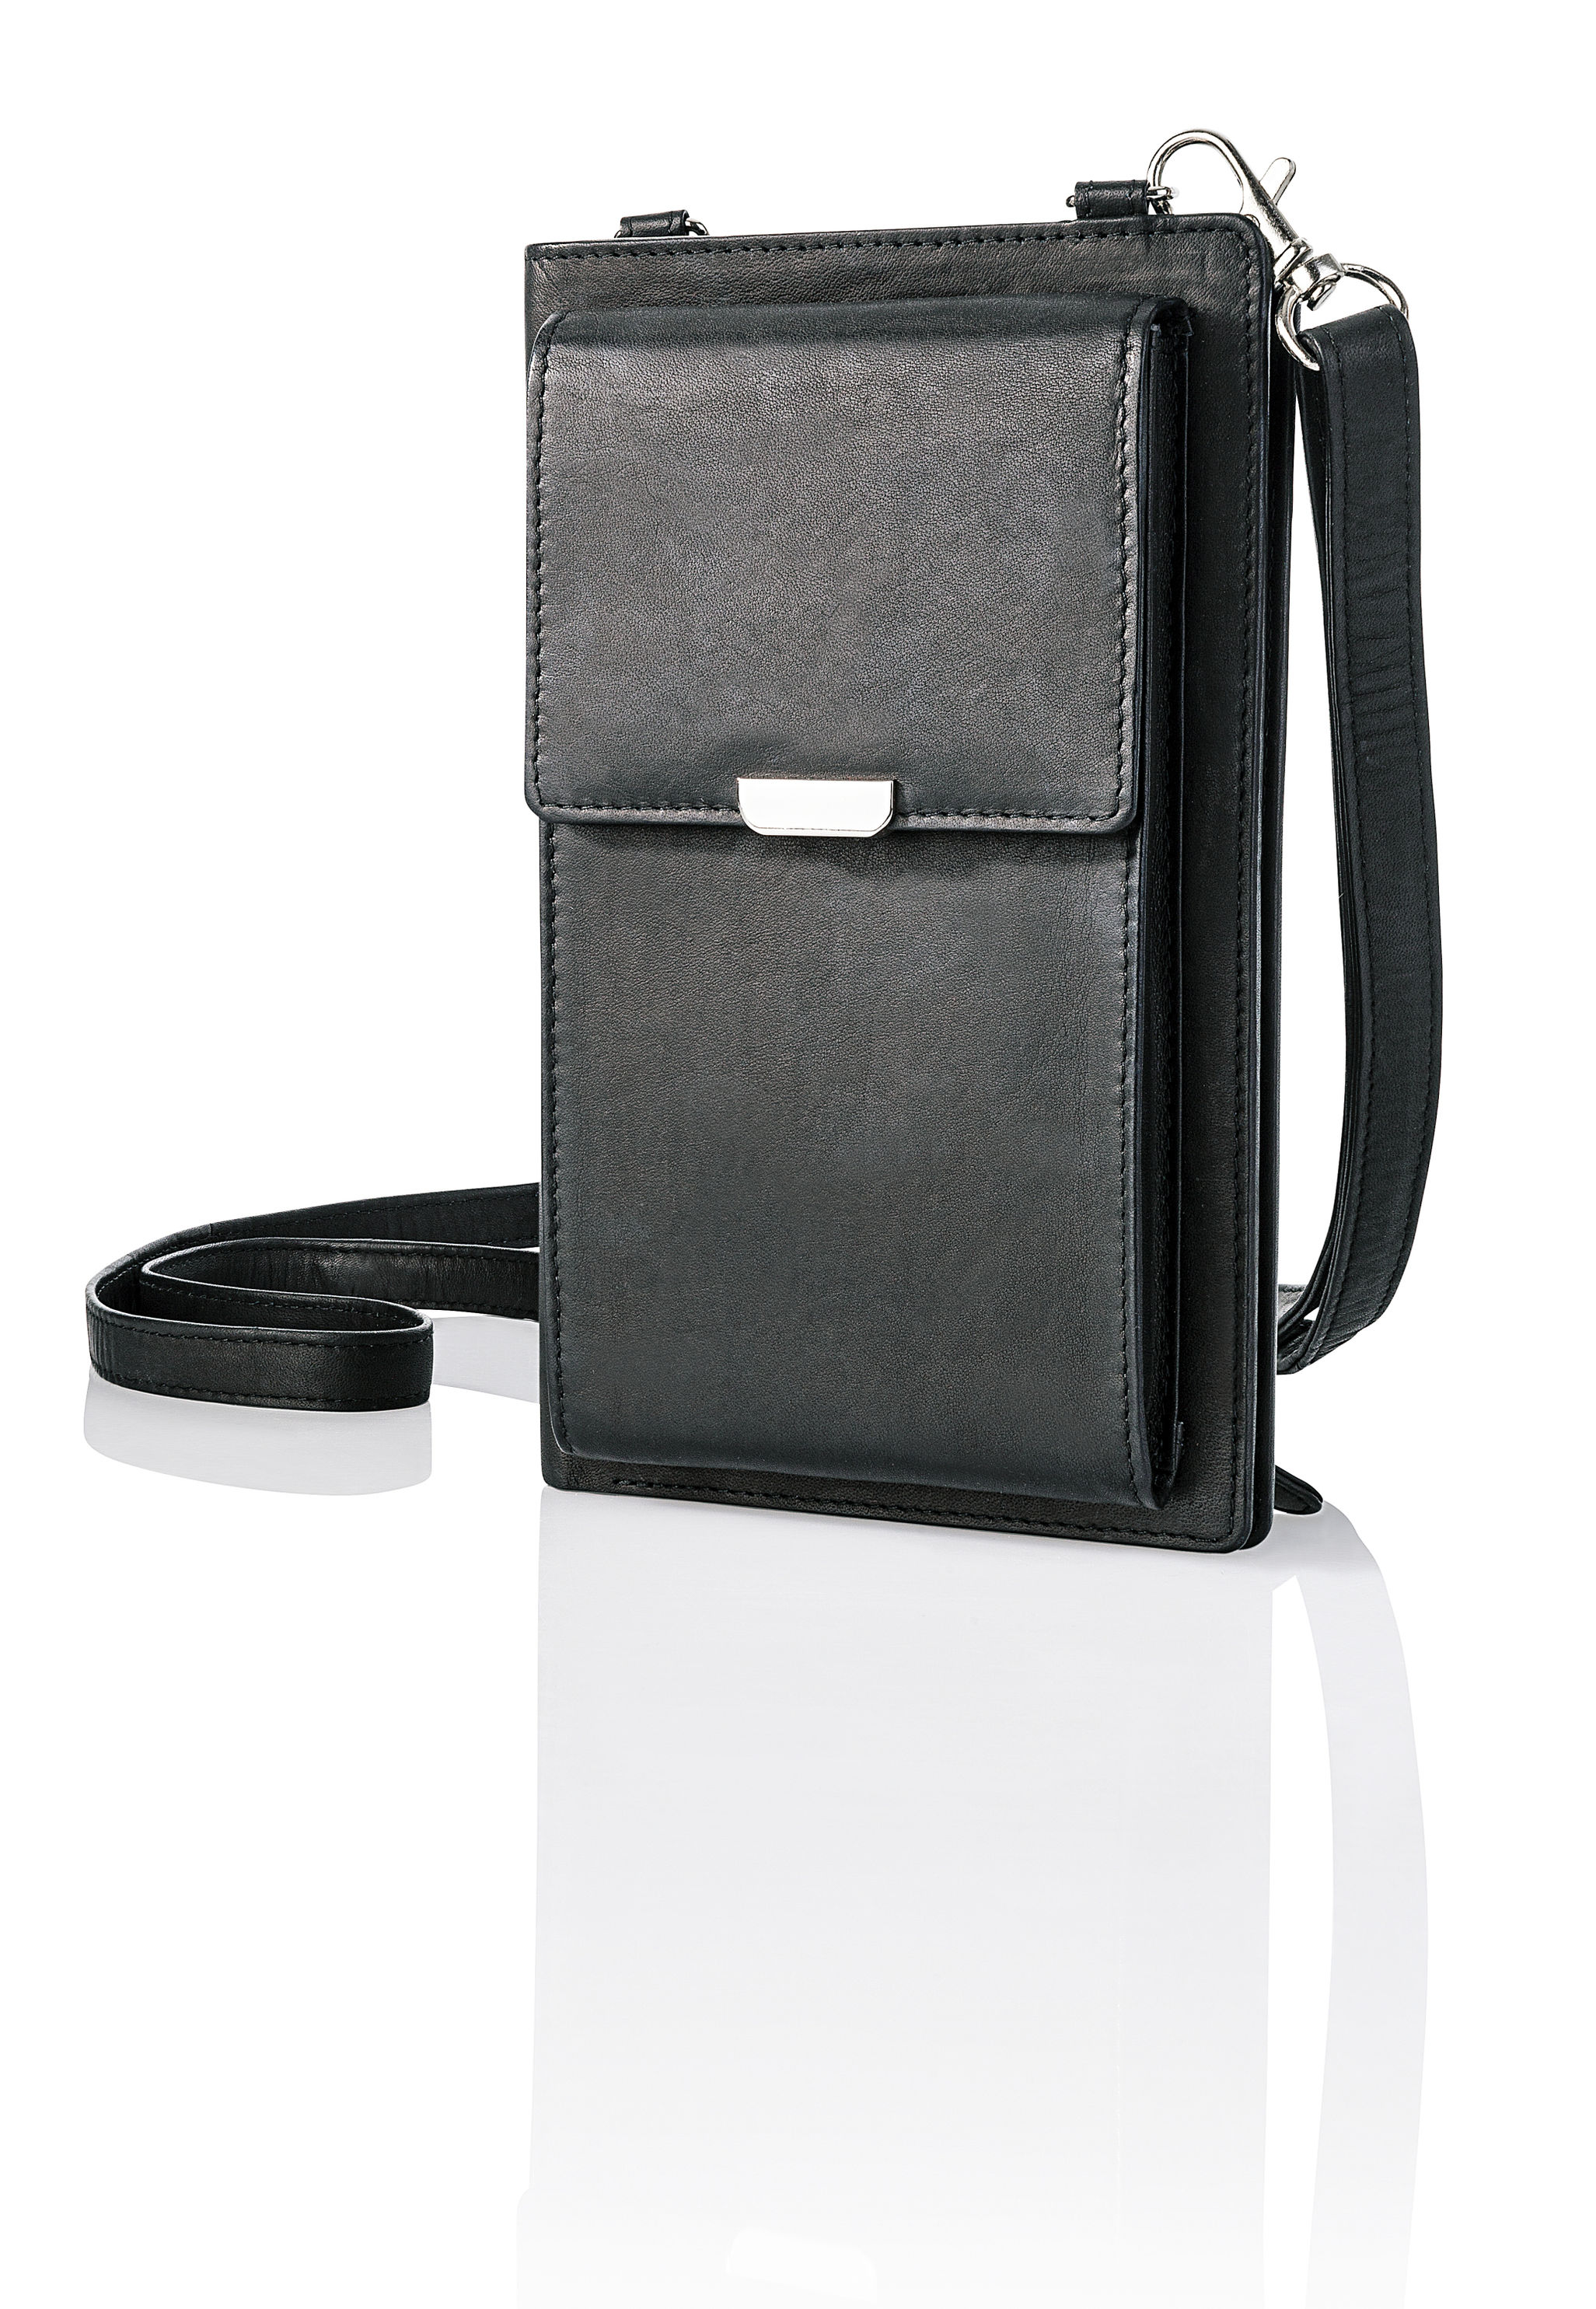 Handy-Umhängetasche mit Kartenfächern, Leder Farbe: schwarz | Weltbild.de